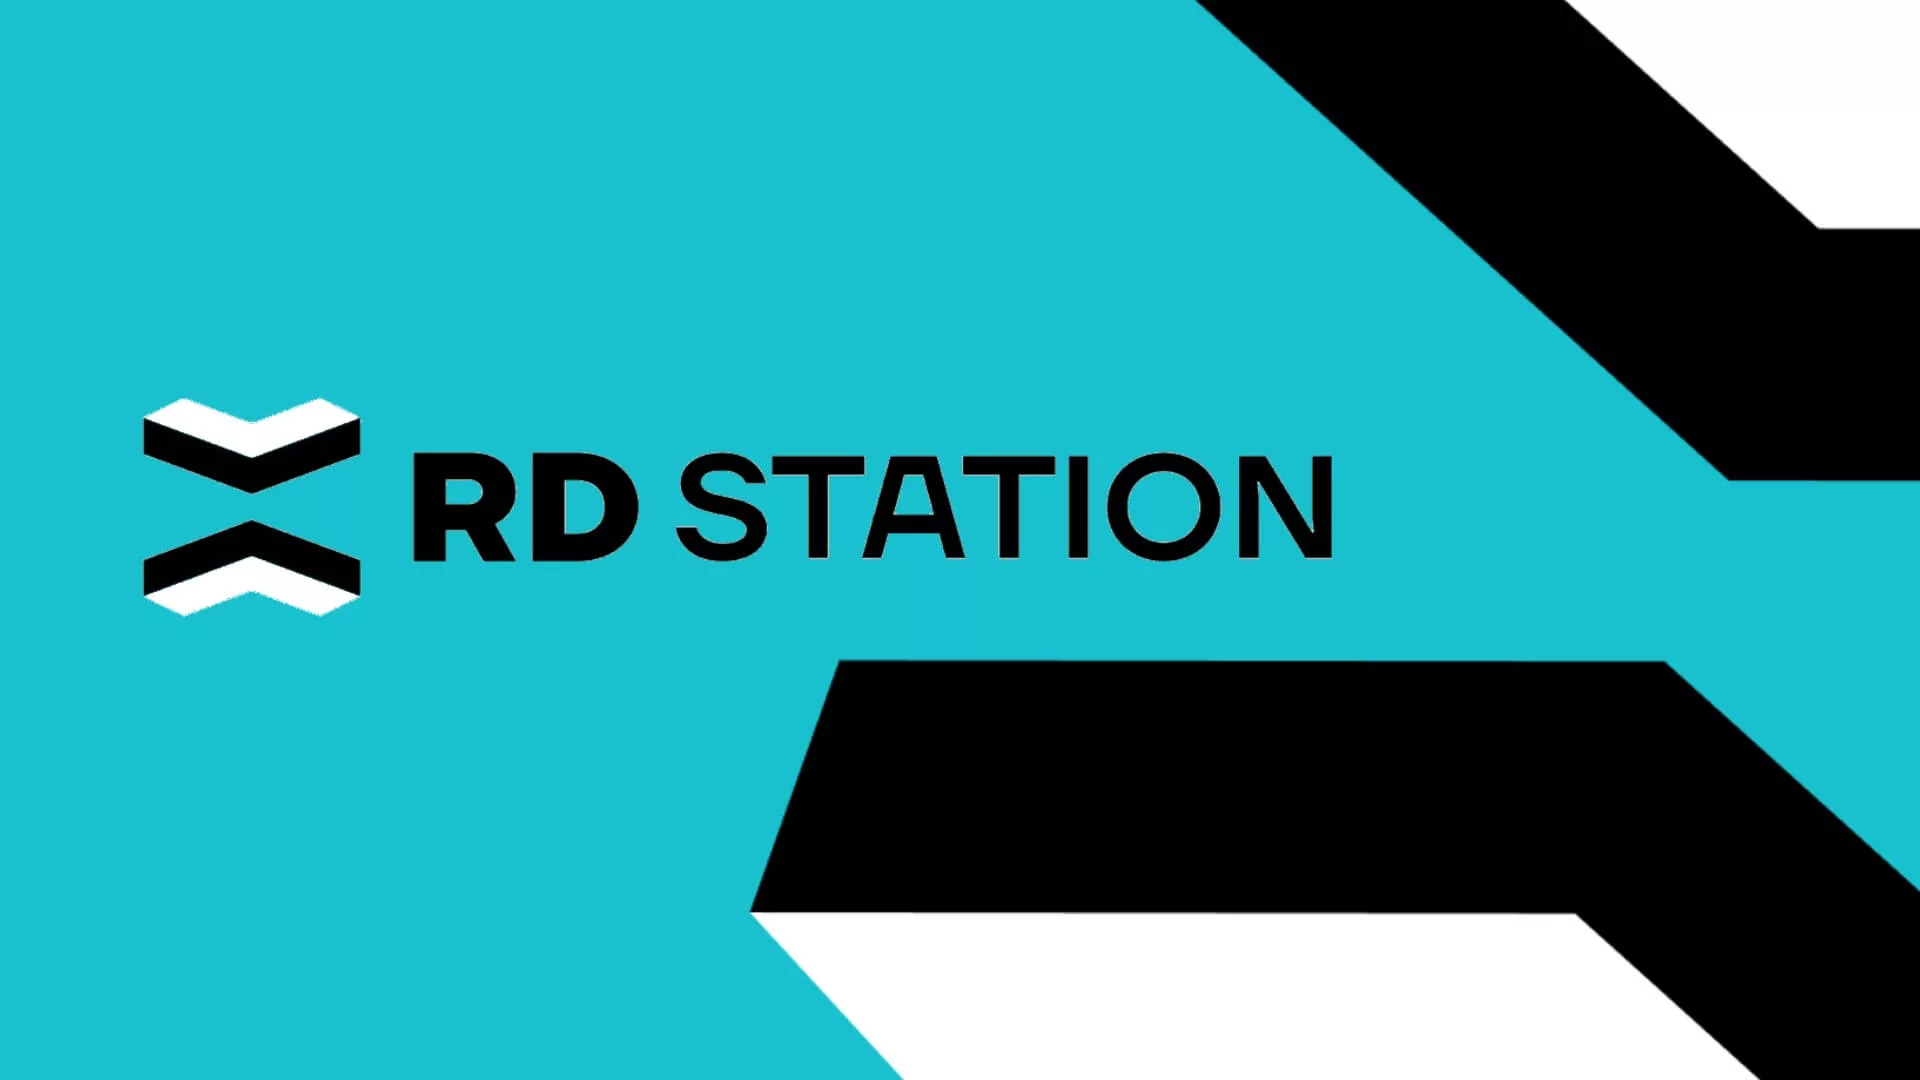 RD Station completa 13 anos de sucesso com 50 mil clientes ativos